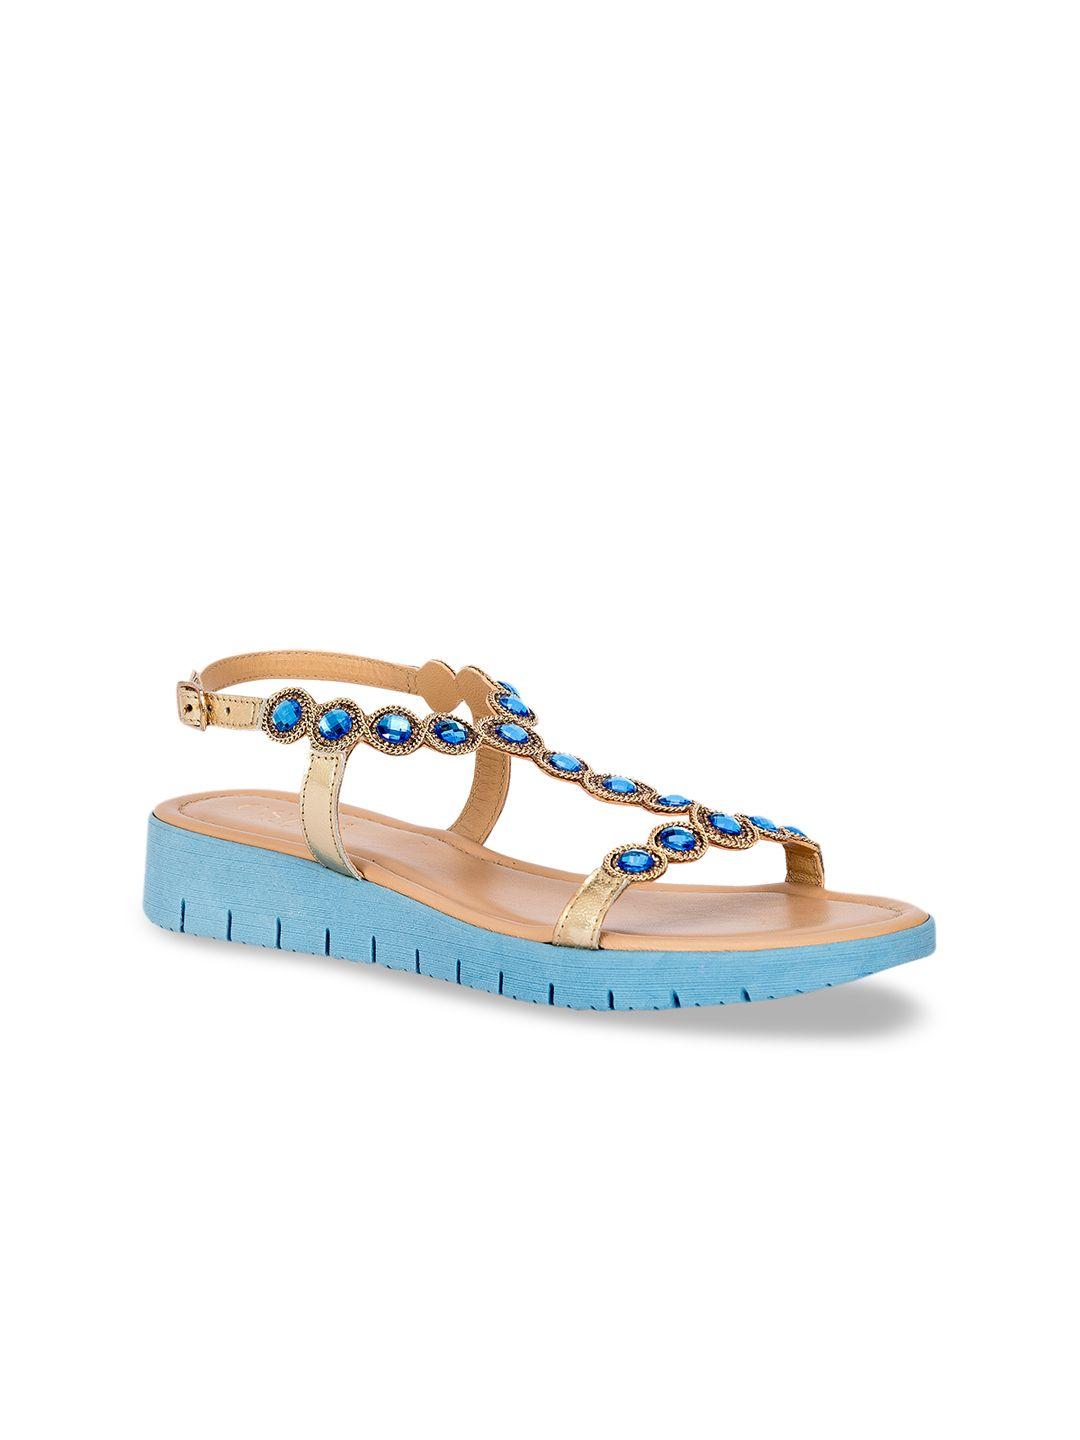 eske women blue embellished open toe flats